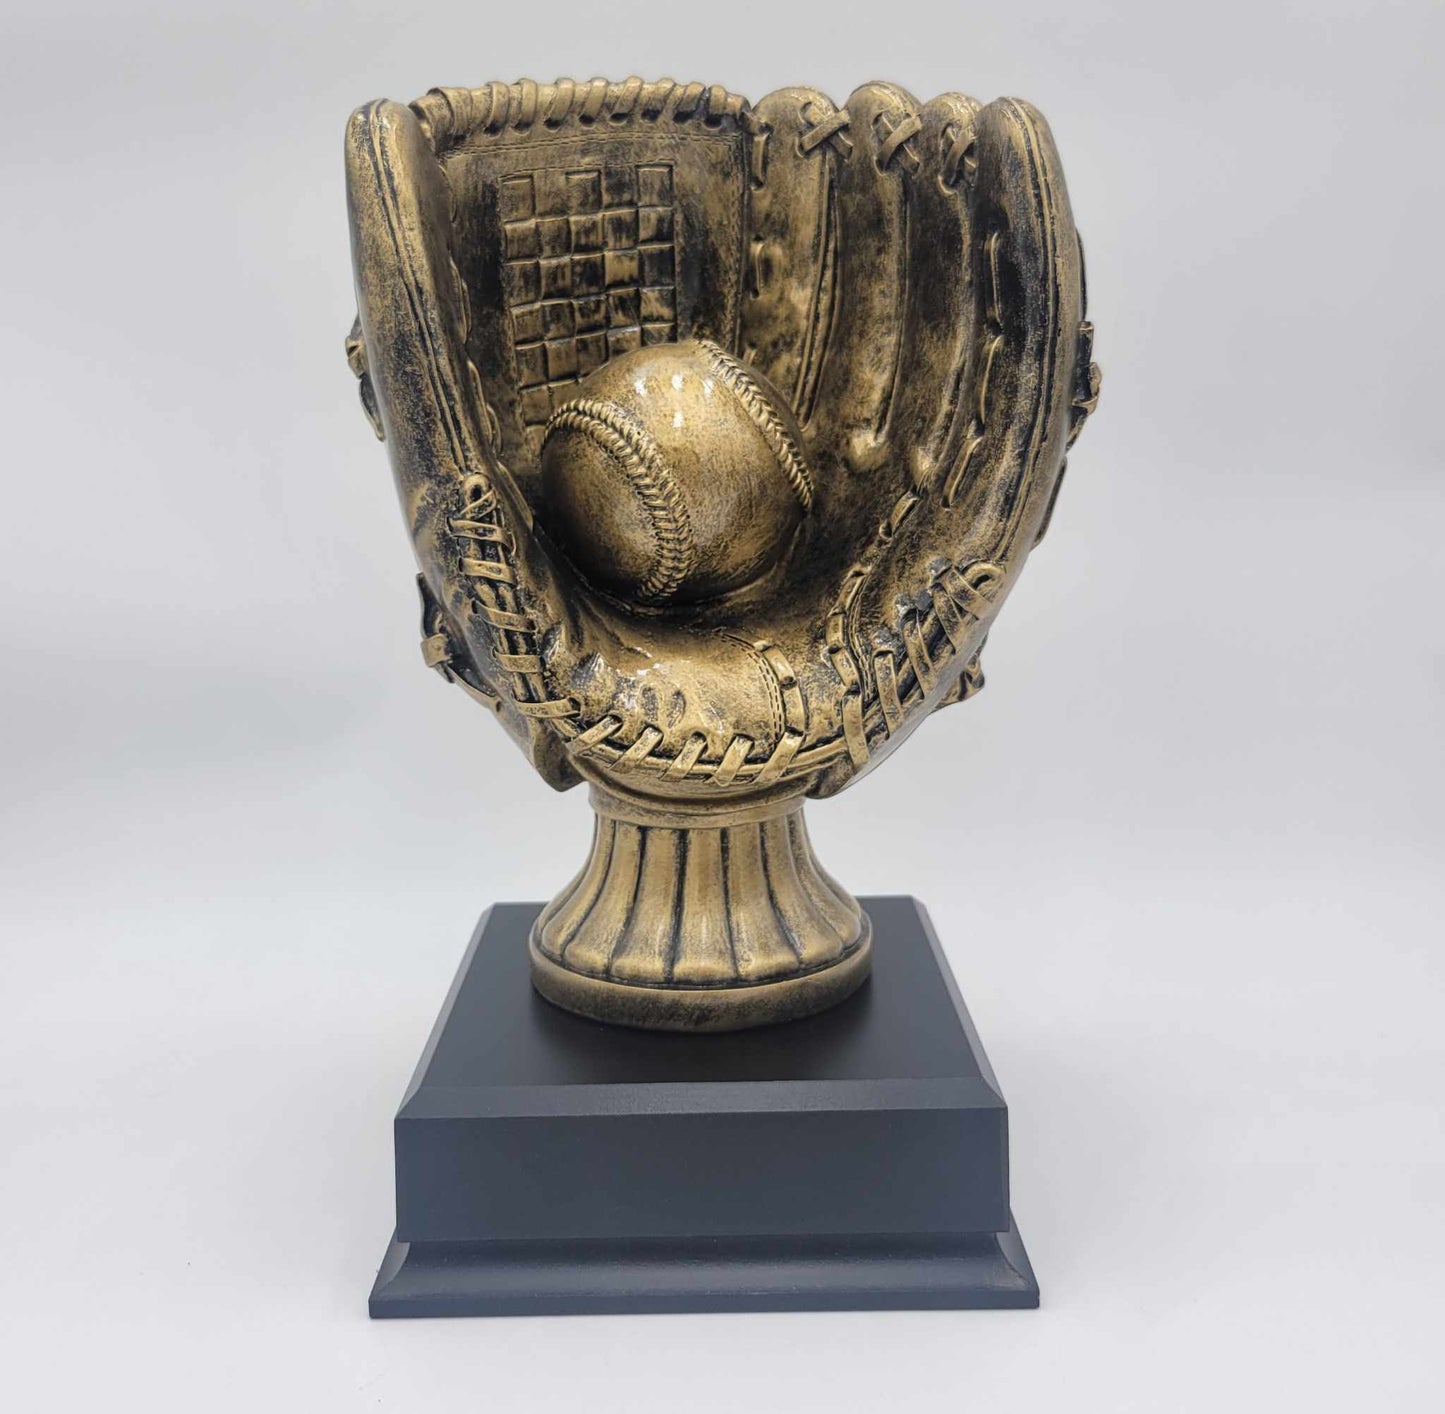 13" Antique Gold Baseball Trophy